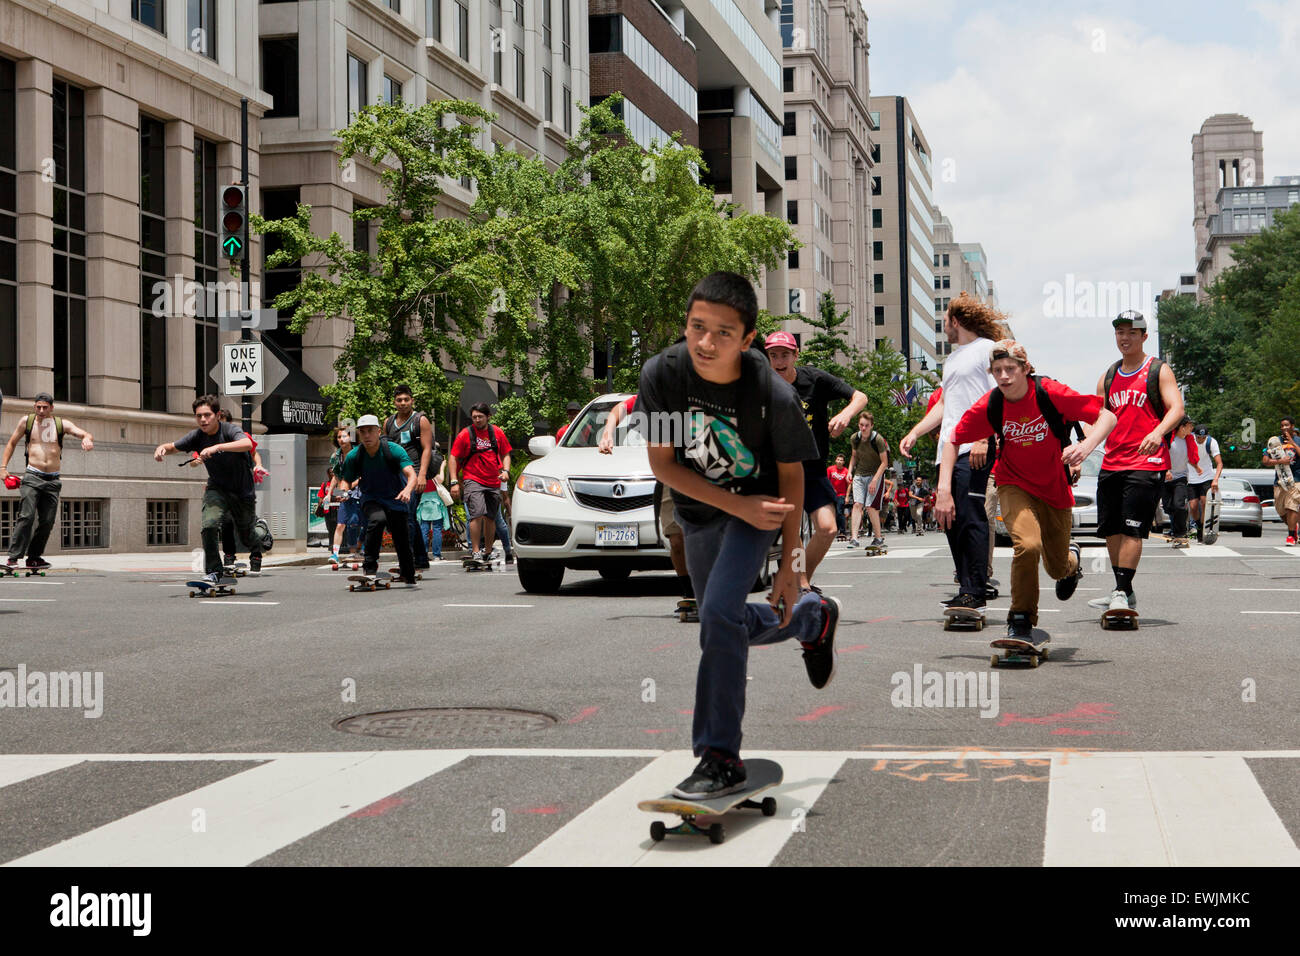 Straße Skateboarder Reiten in Straße - USA Stockfoto